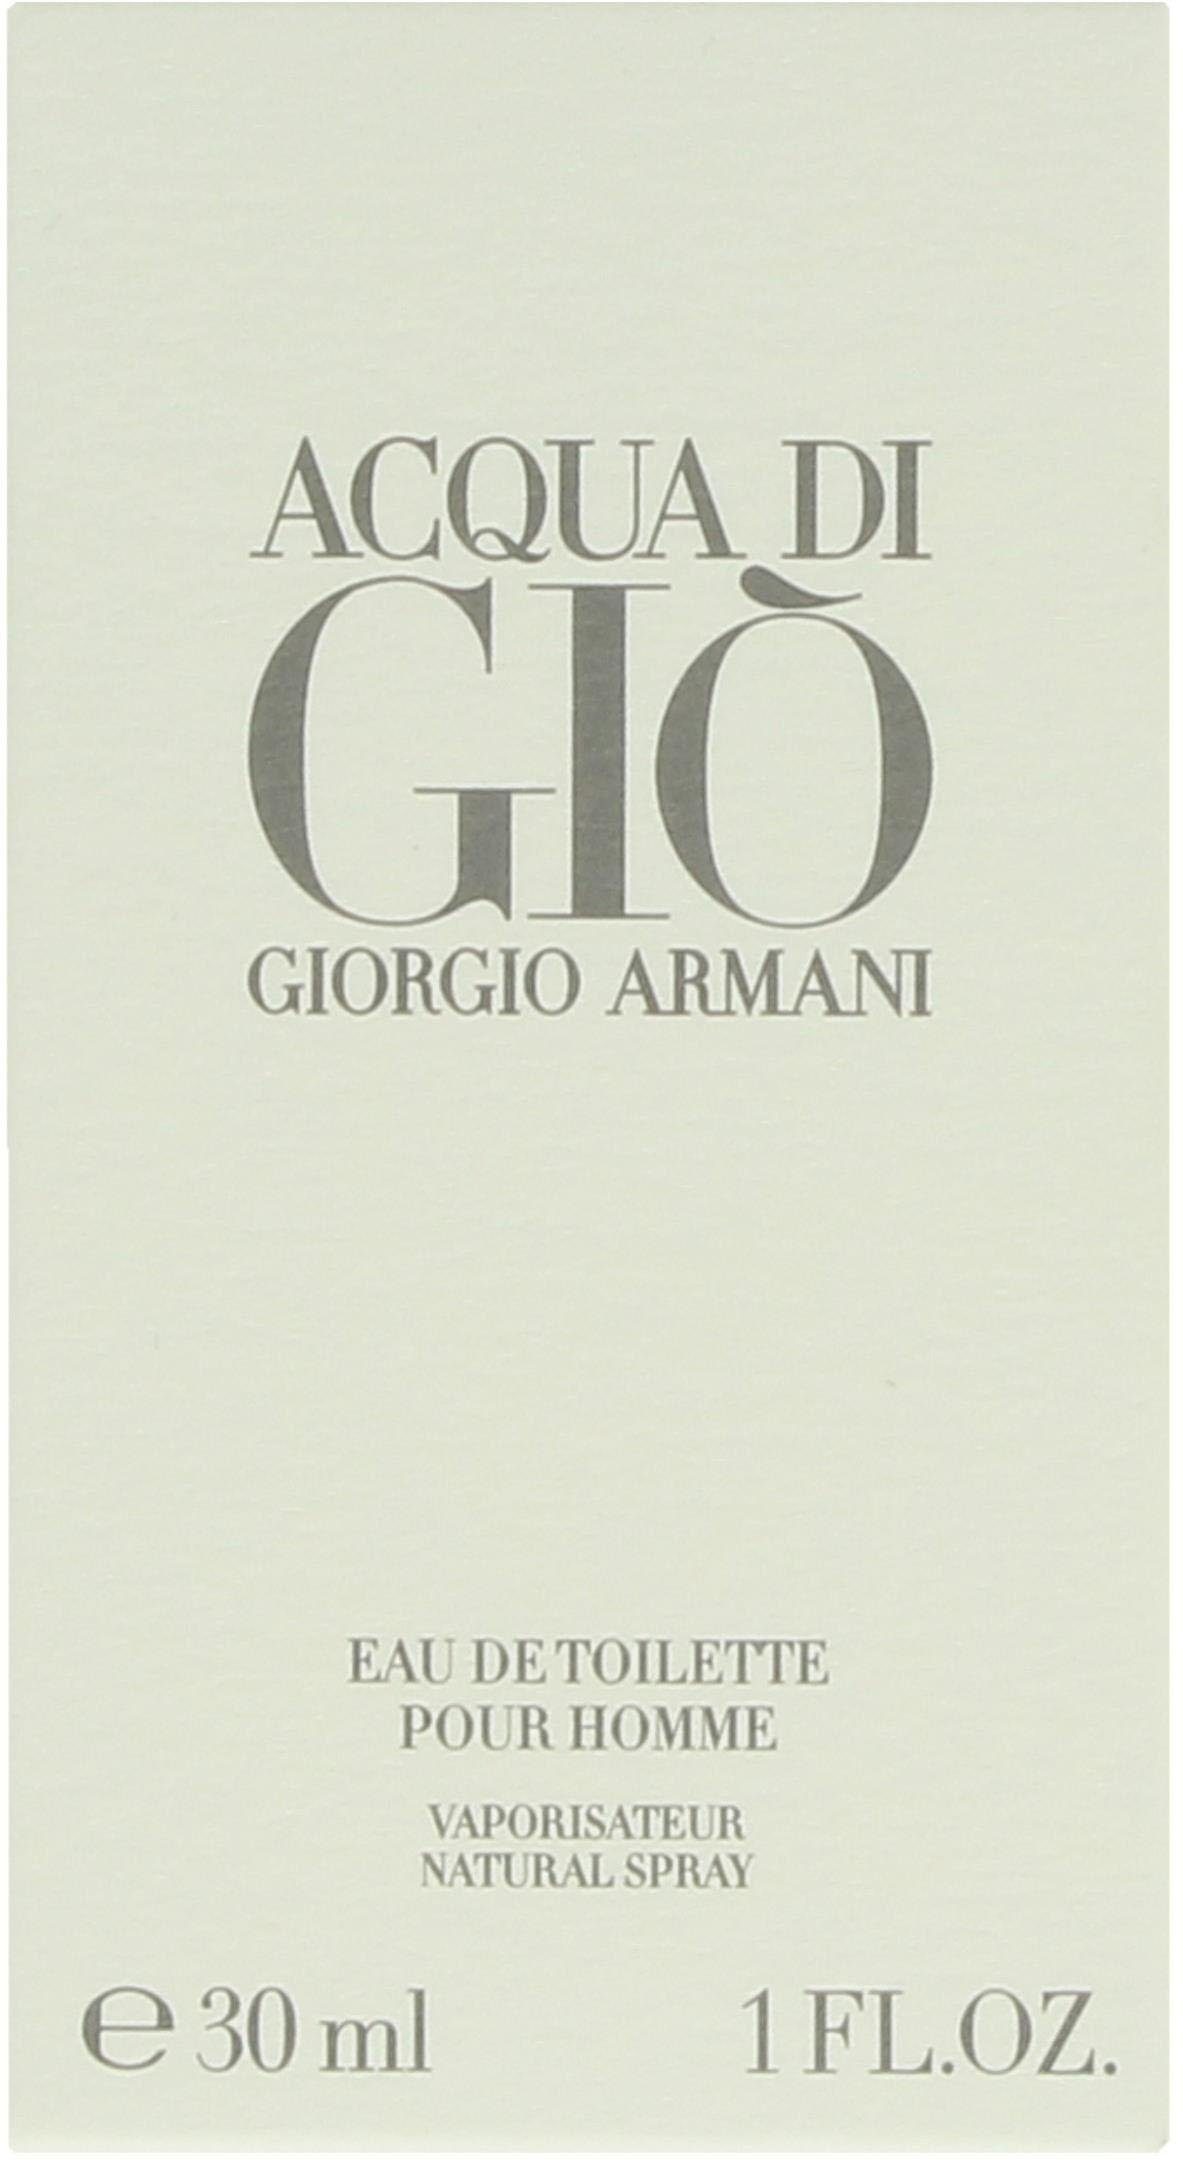 Eau Armani Toilette di Acqua de Giorgio Gio